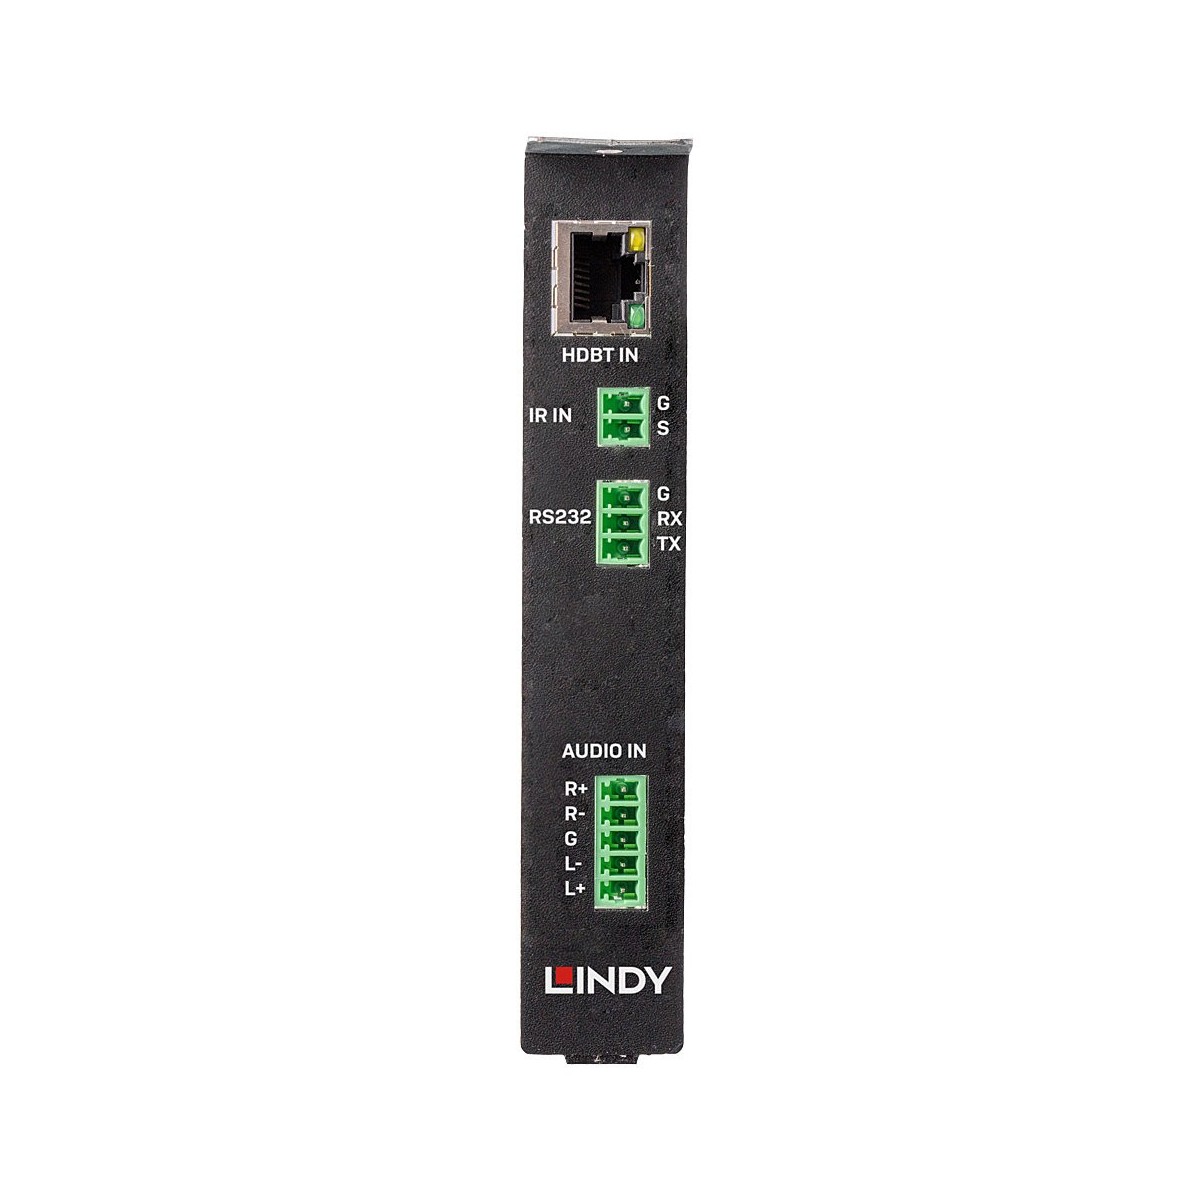 Lindy 38353 - HDBaseT - Black - 18 Gbit/s - 23.3 mm - 126.6 mm - 390 g